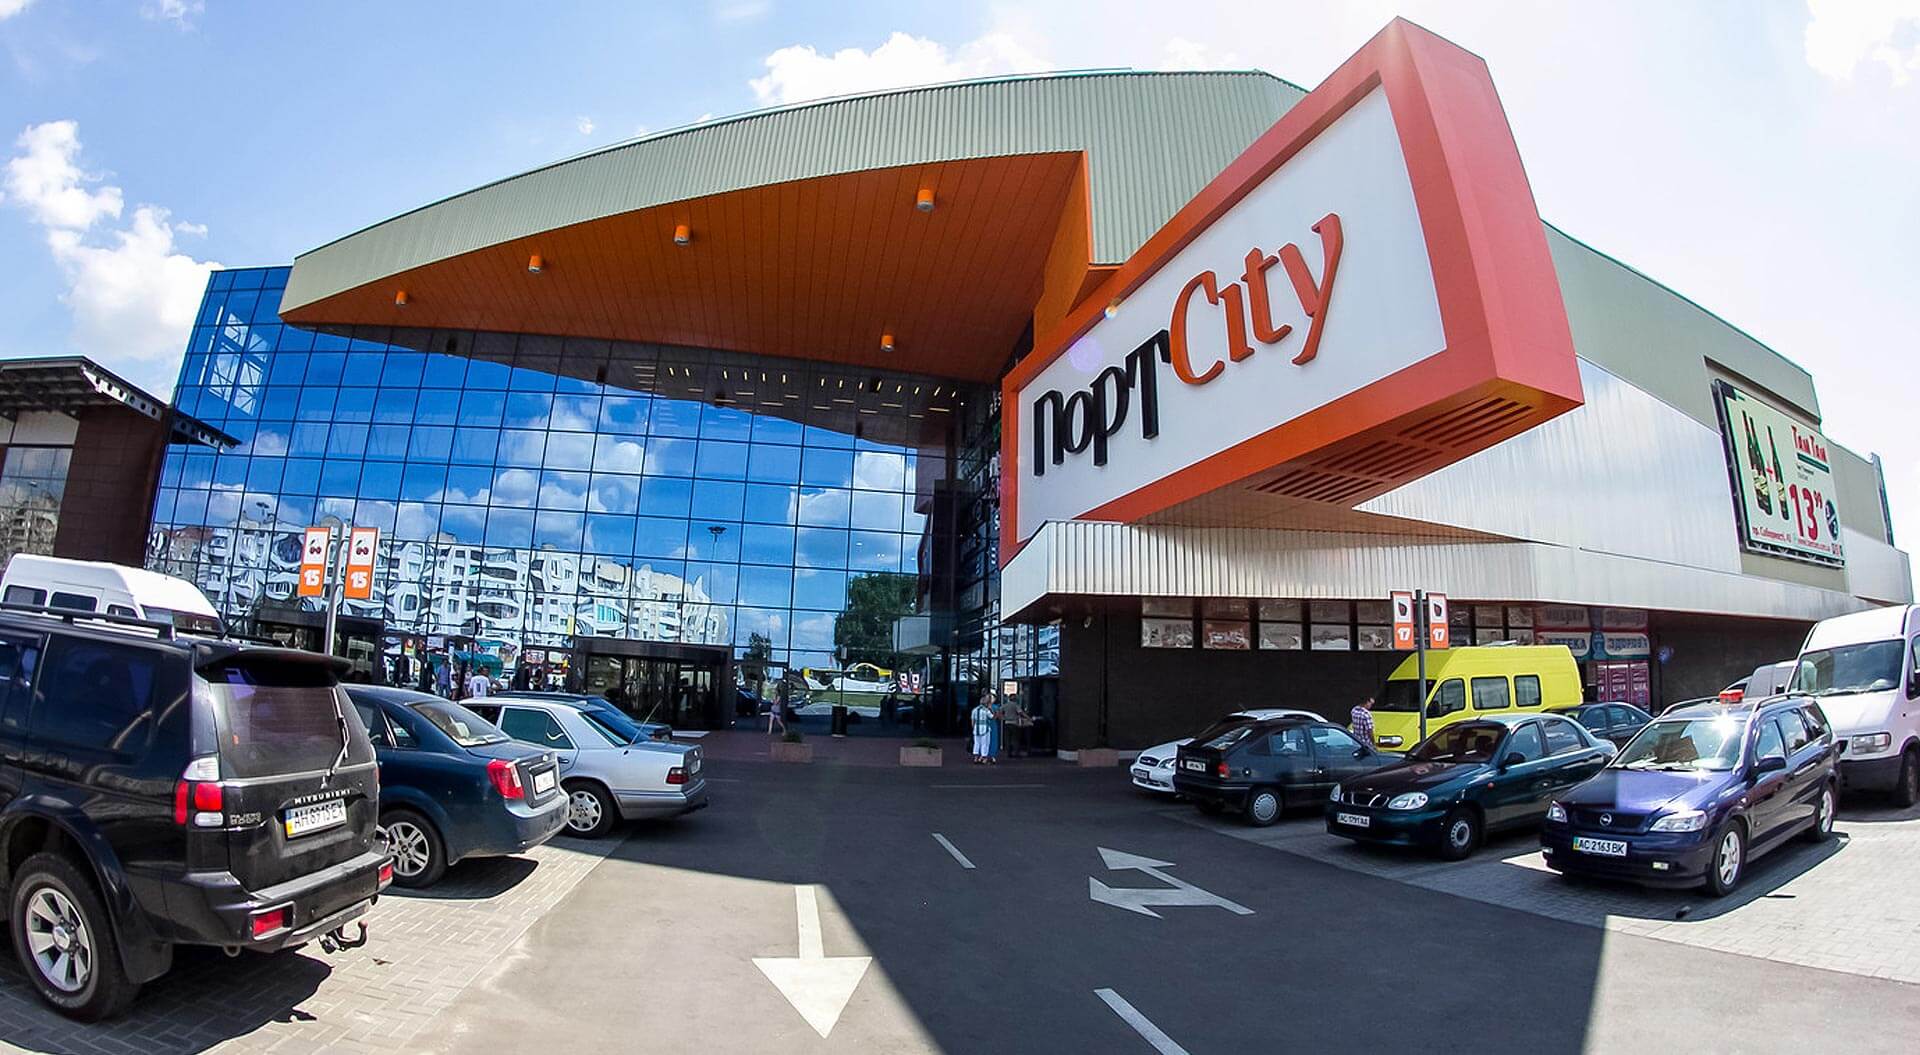 Port City shopping mall brand identity entrance signage Lutsk, Ukraine